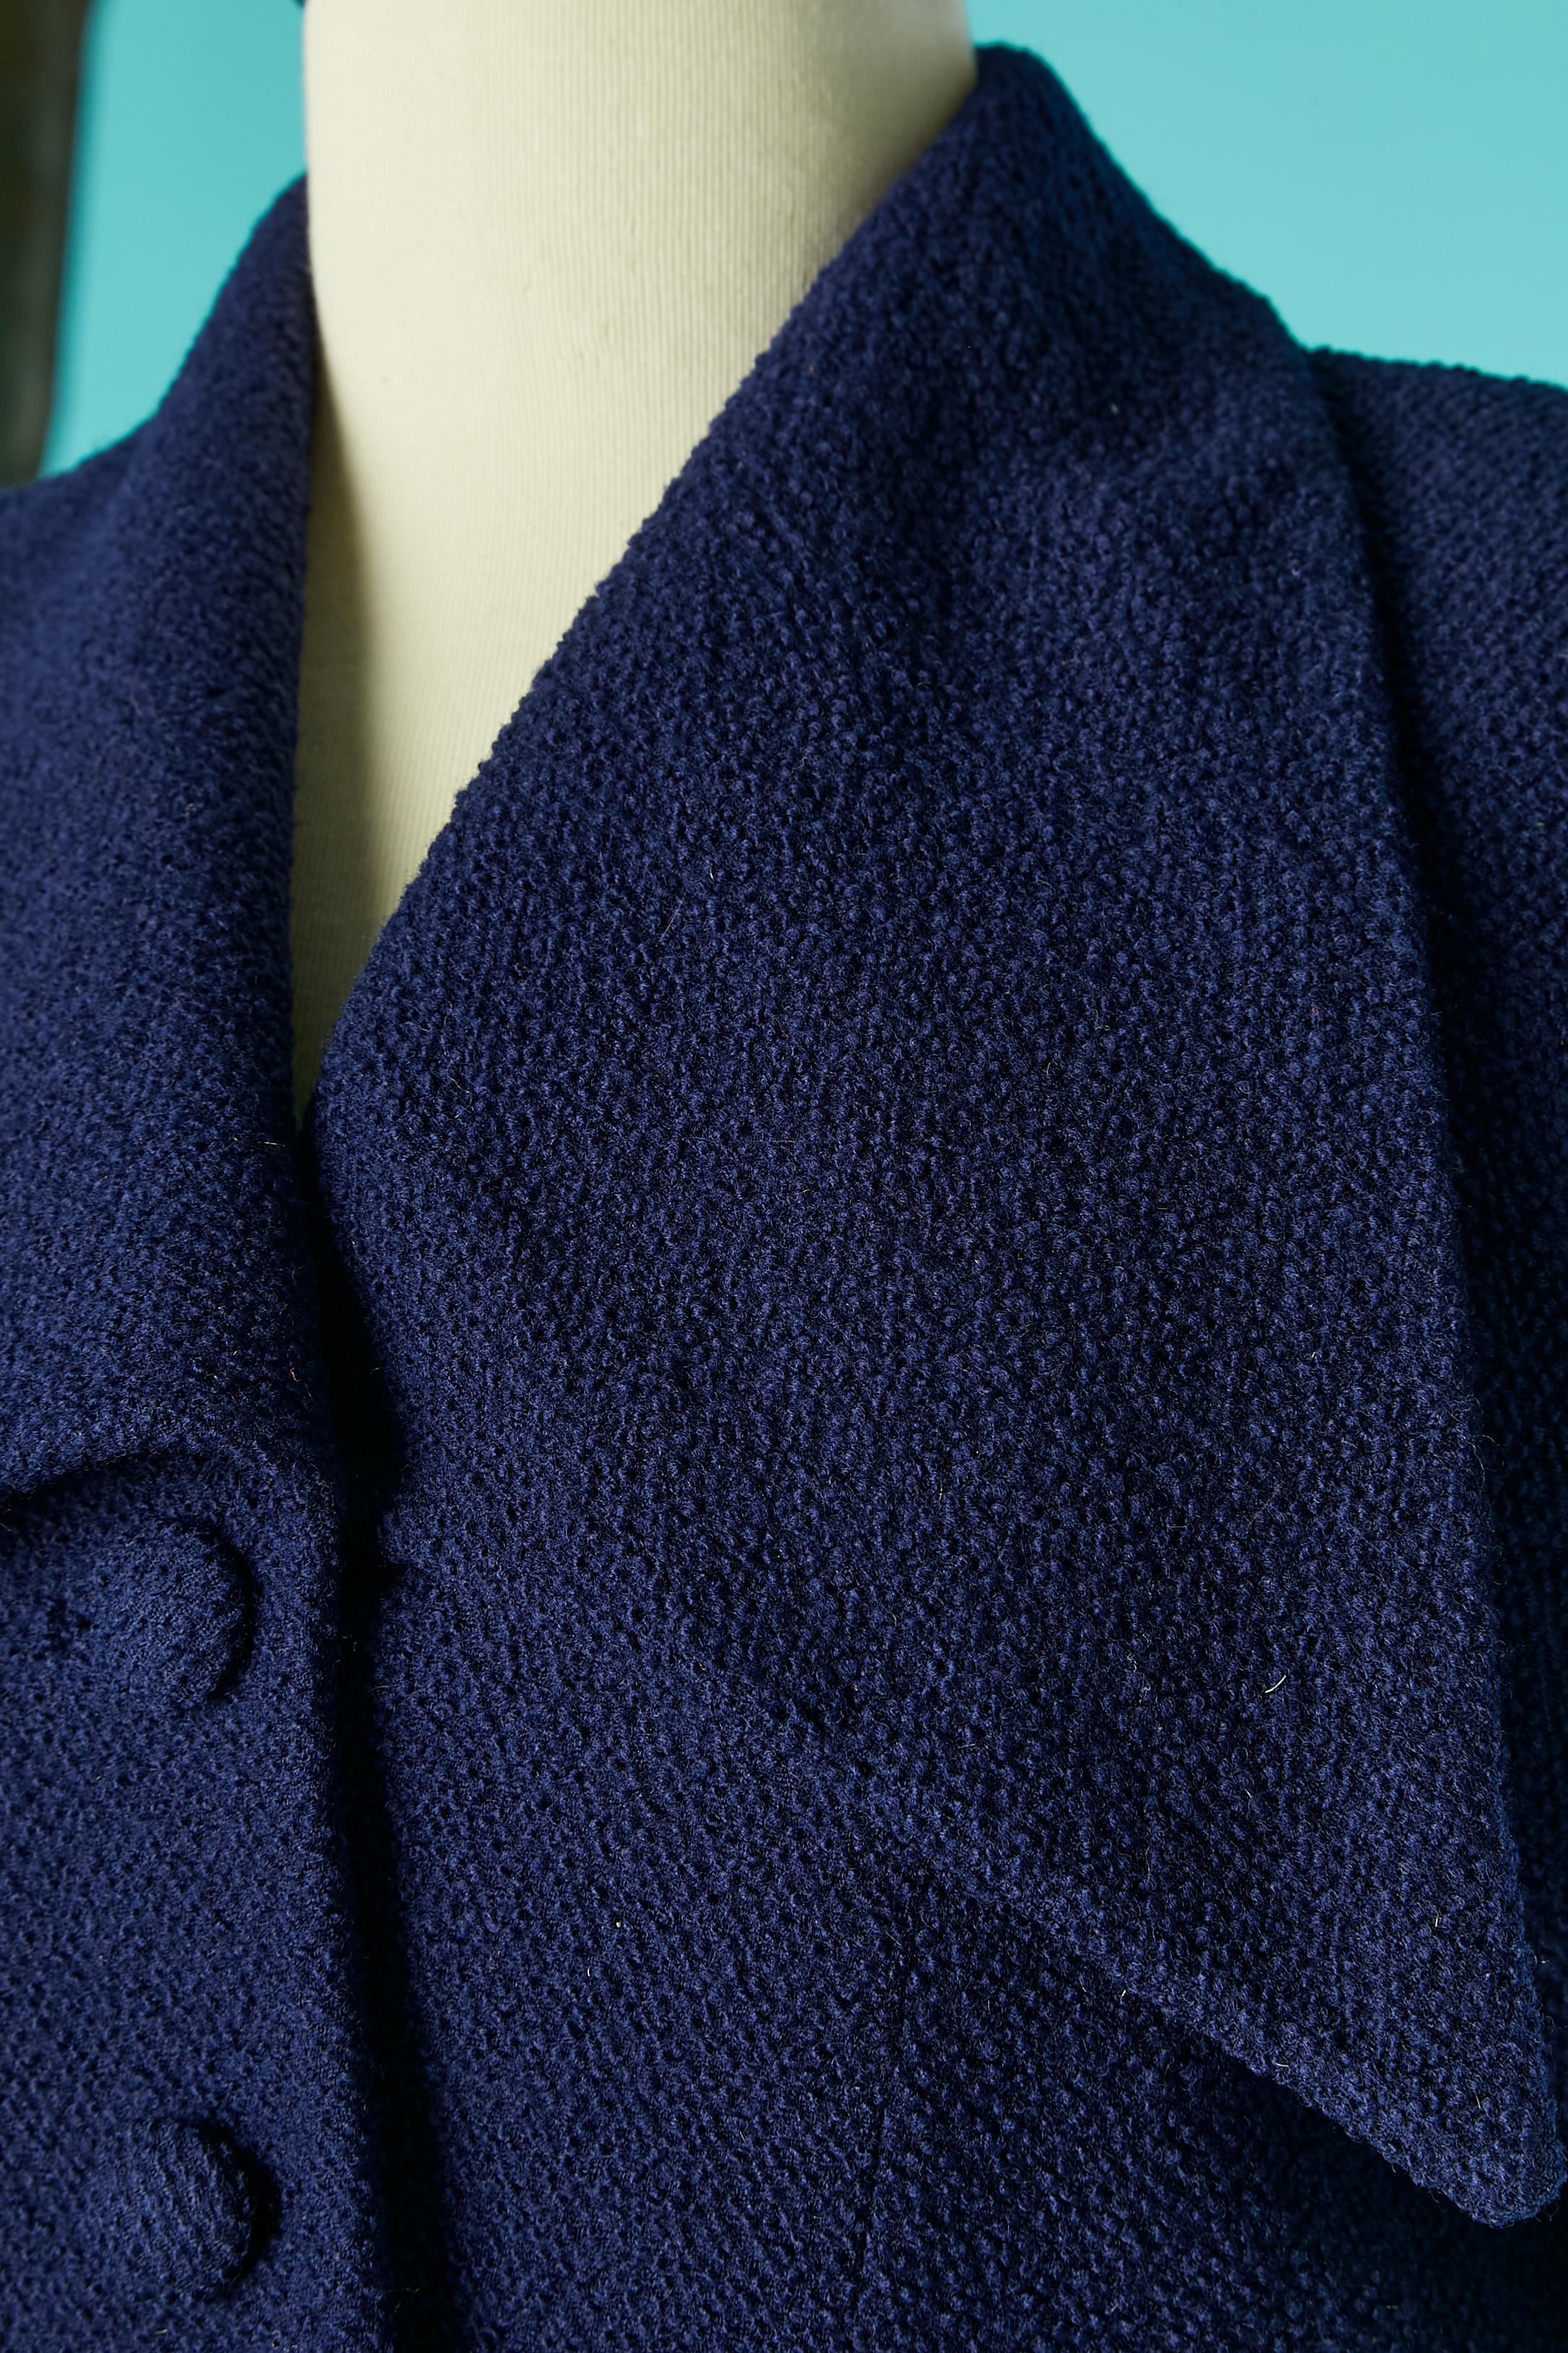 Costume jupe en laine bleu marine avec manches bouillonnantes. Doublure en rayonne (ou acétate) bleu marine. Bouton recouvert de tissu et boutonnière. Boutons en plastique et boutonnière aux poignets. Epaulettes. 
TAILLE M 